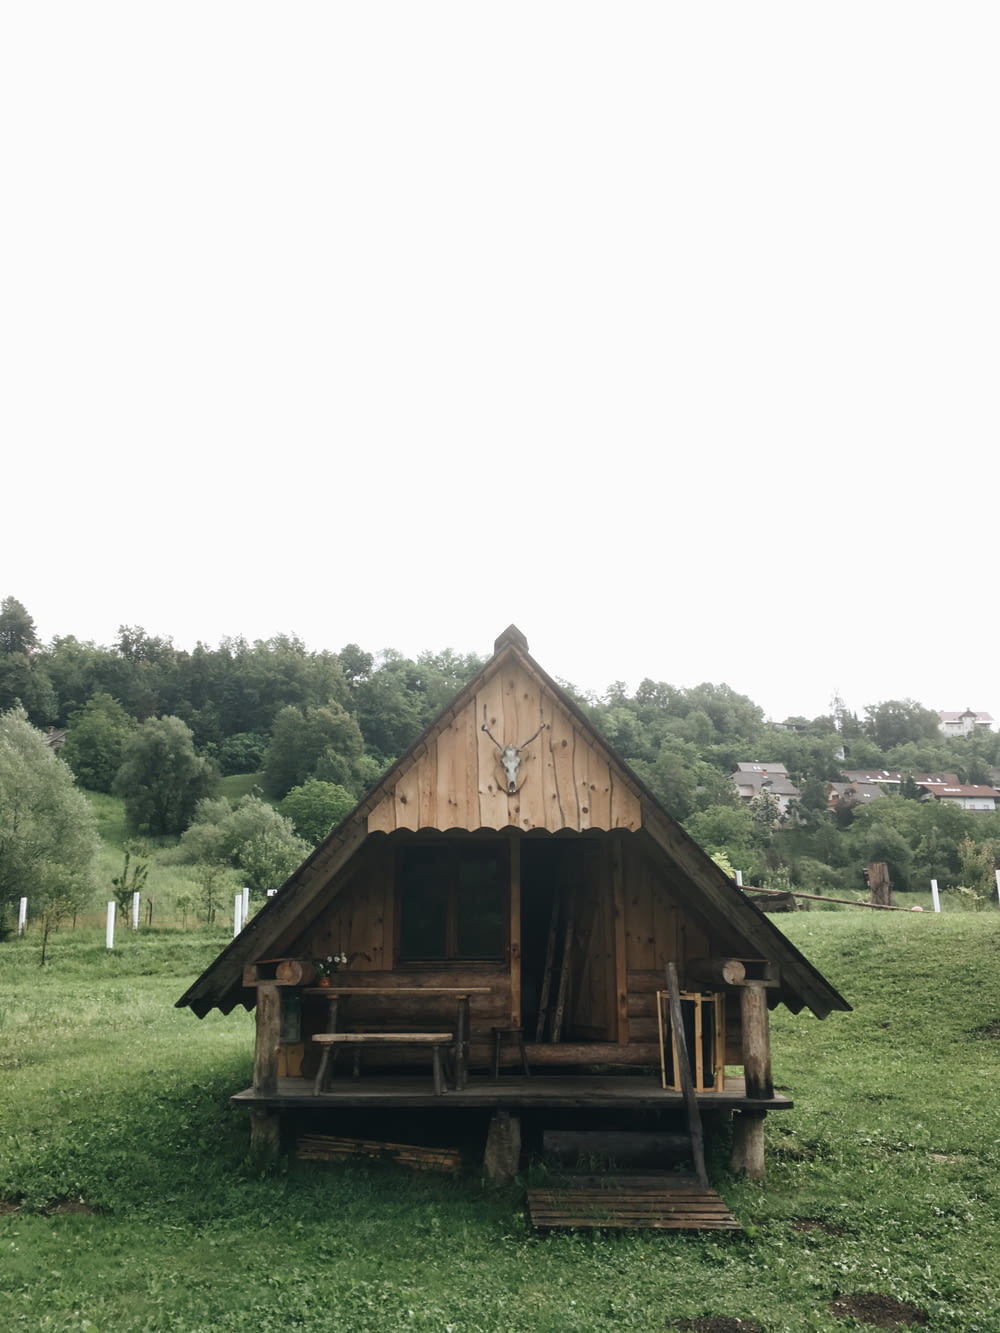 Casa de madeira marrom na pastagem verde durante o dia